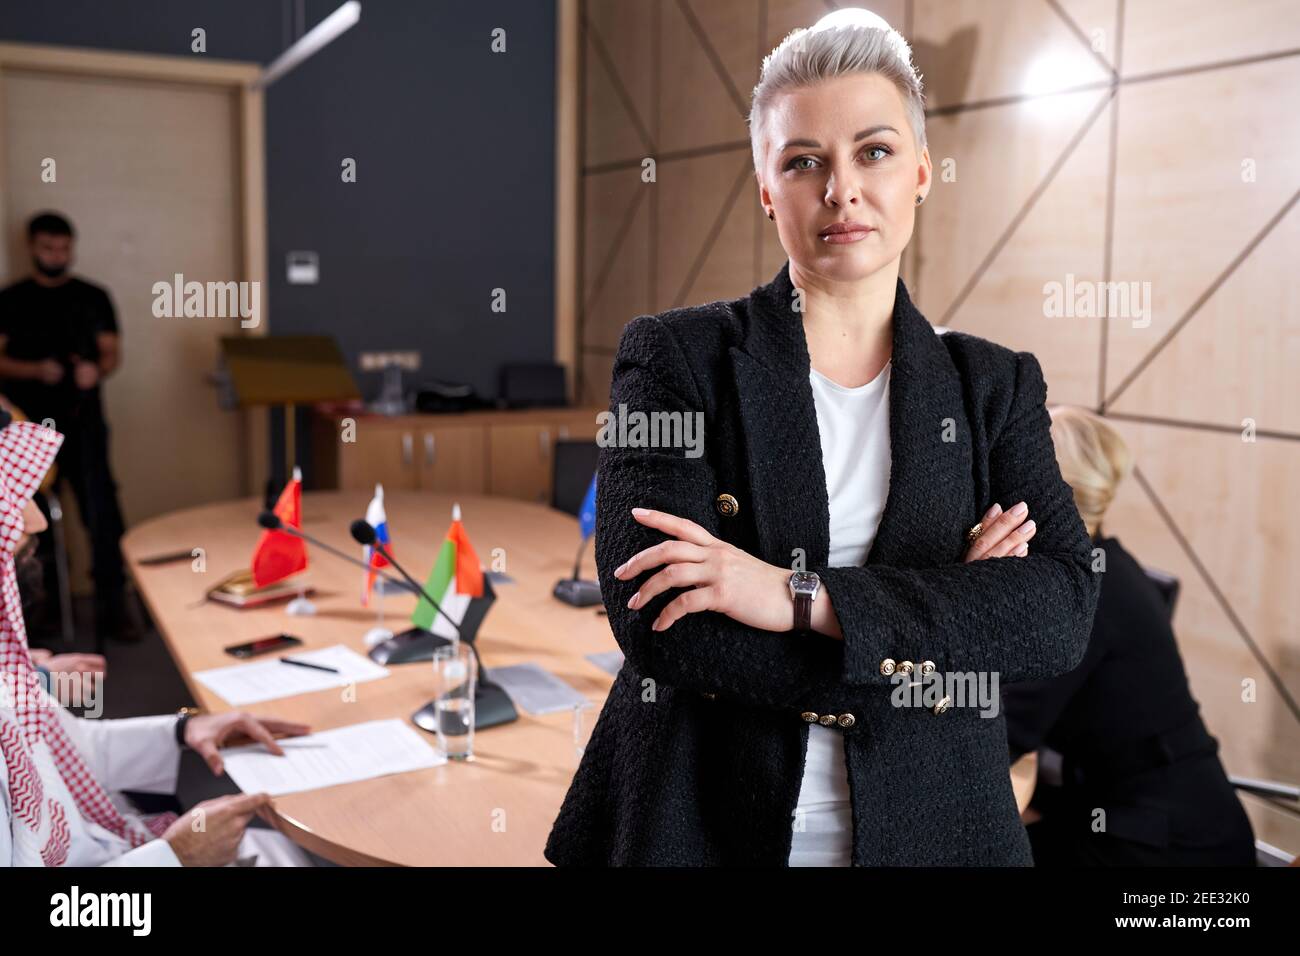 50-55 Jahre alte Geschäftsfrau mit stylischen kurzen Haaren Formelle Kleidung in Sitzungssaal während des Treffens mit internationalen Gruppe posiert Der Politiker sitzen Stockfoto